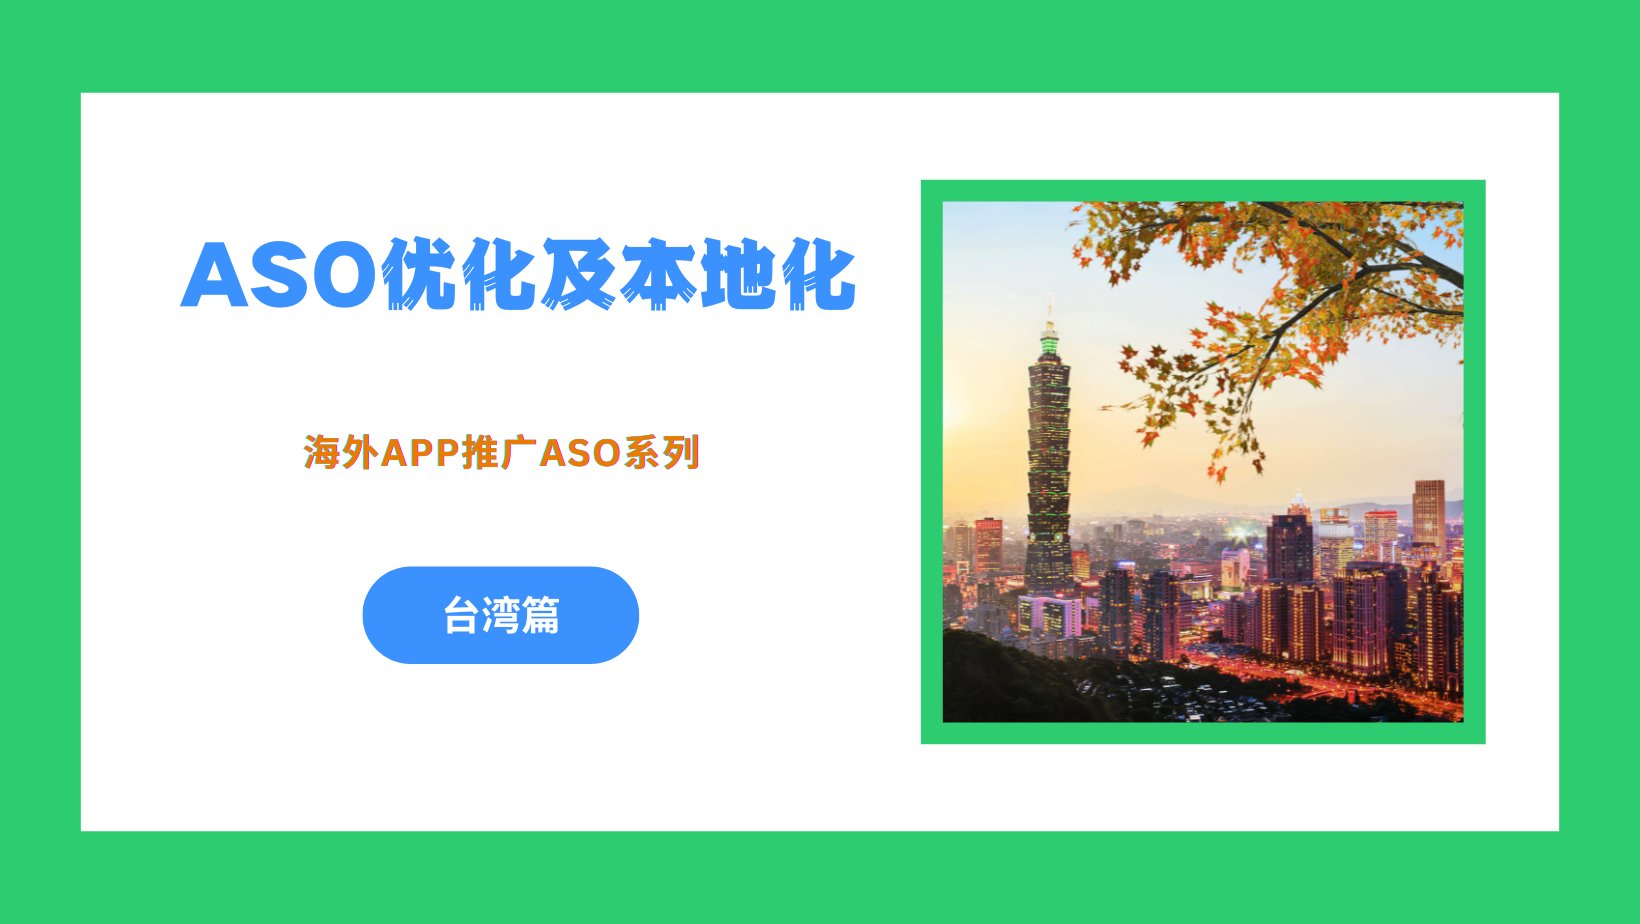 海外App推广之ASO优化及本地化 – 台湾篇